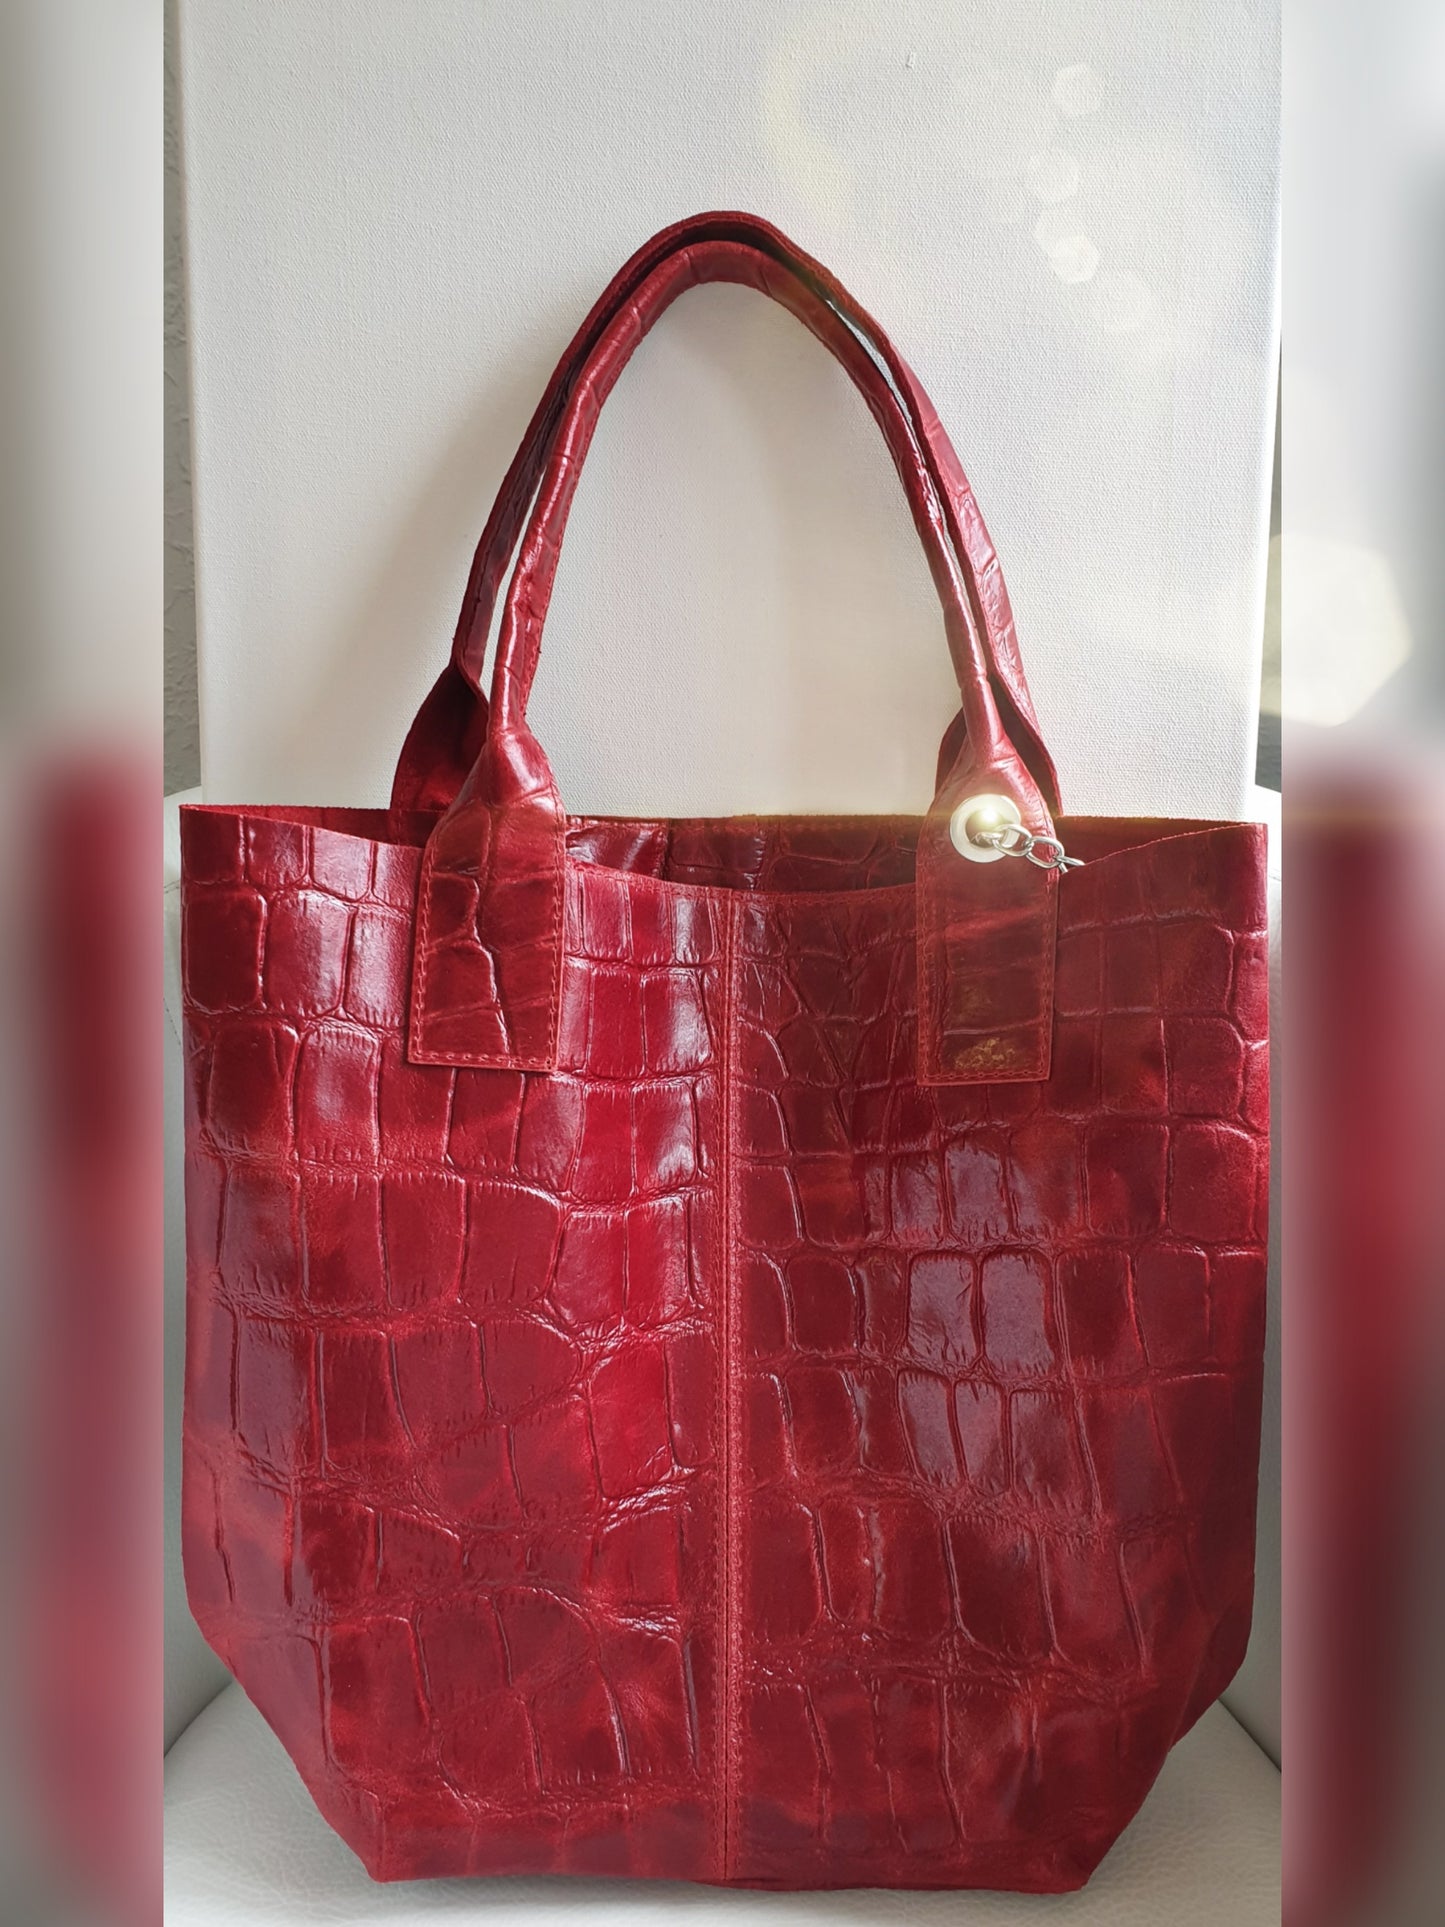 Tasche Shopper in Rot aus Leder mit Krokopraegung gross